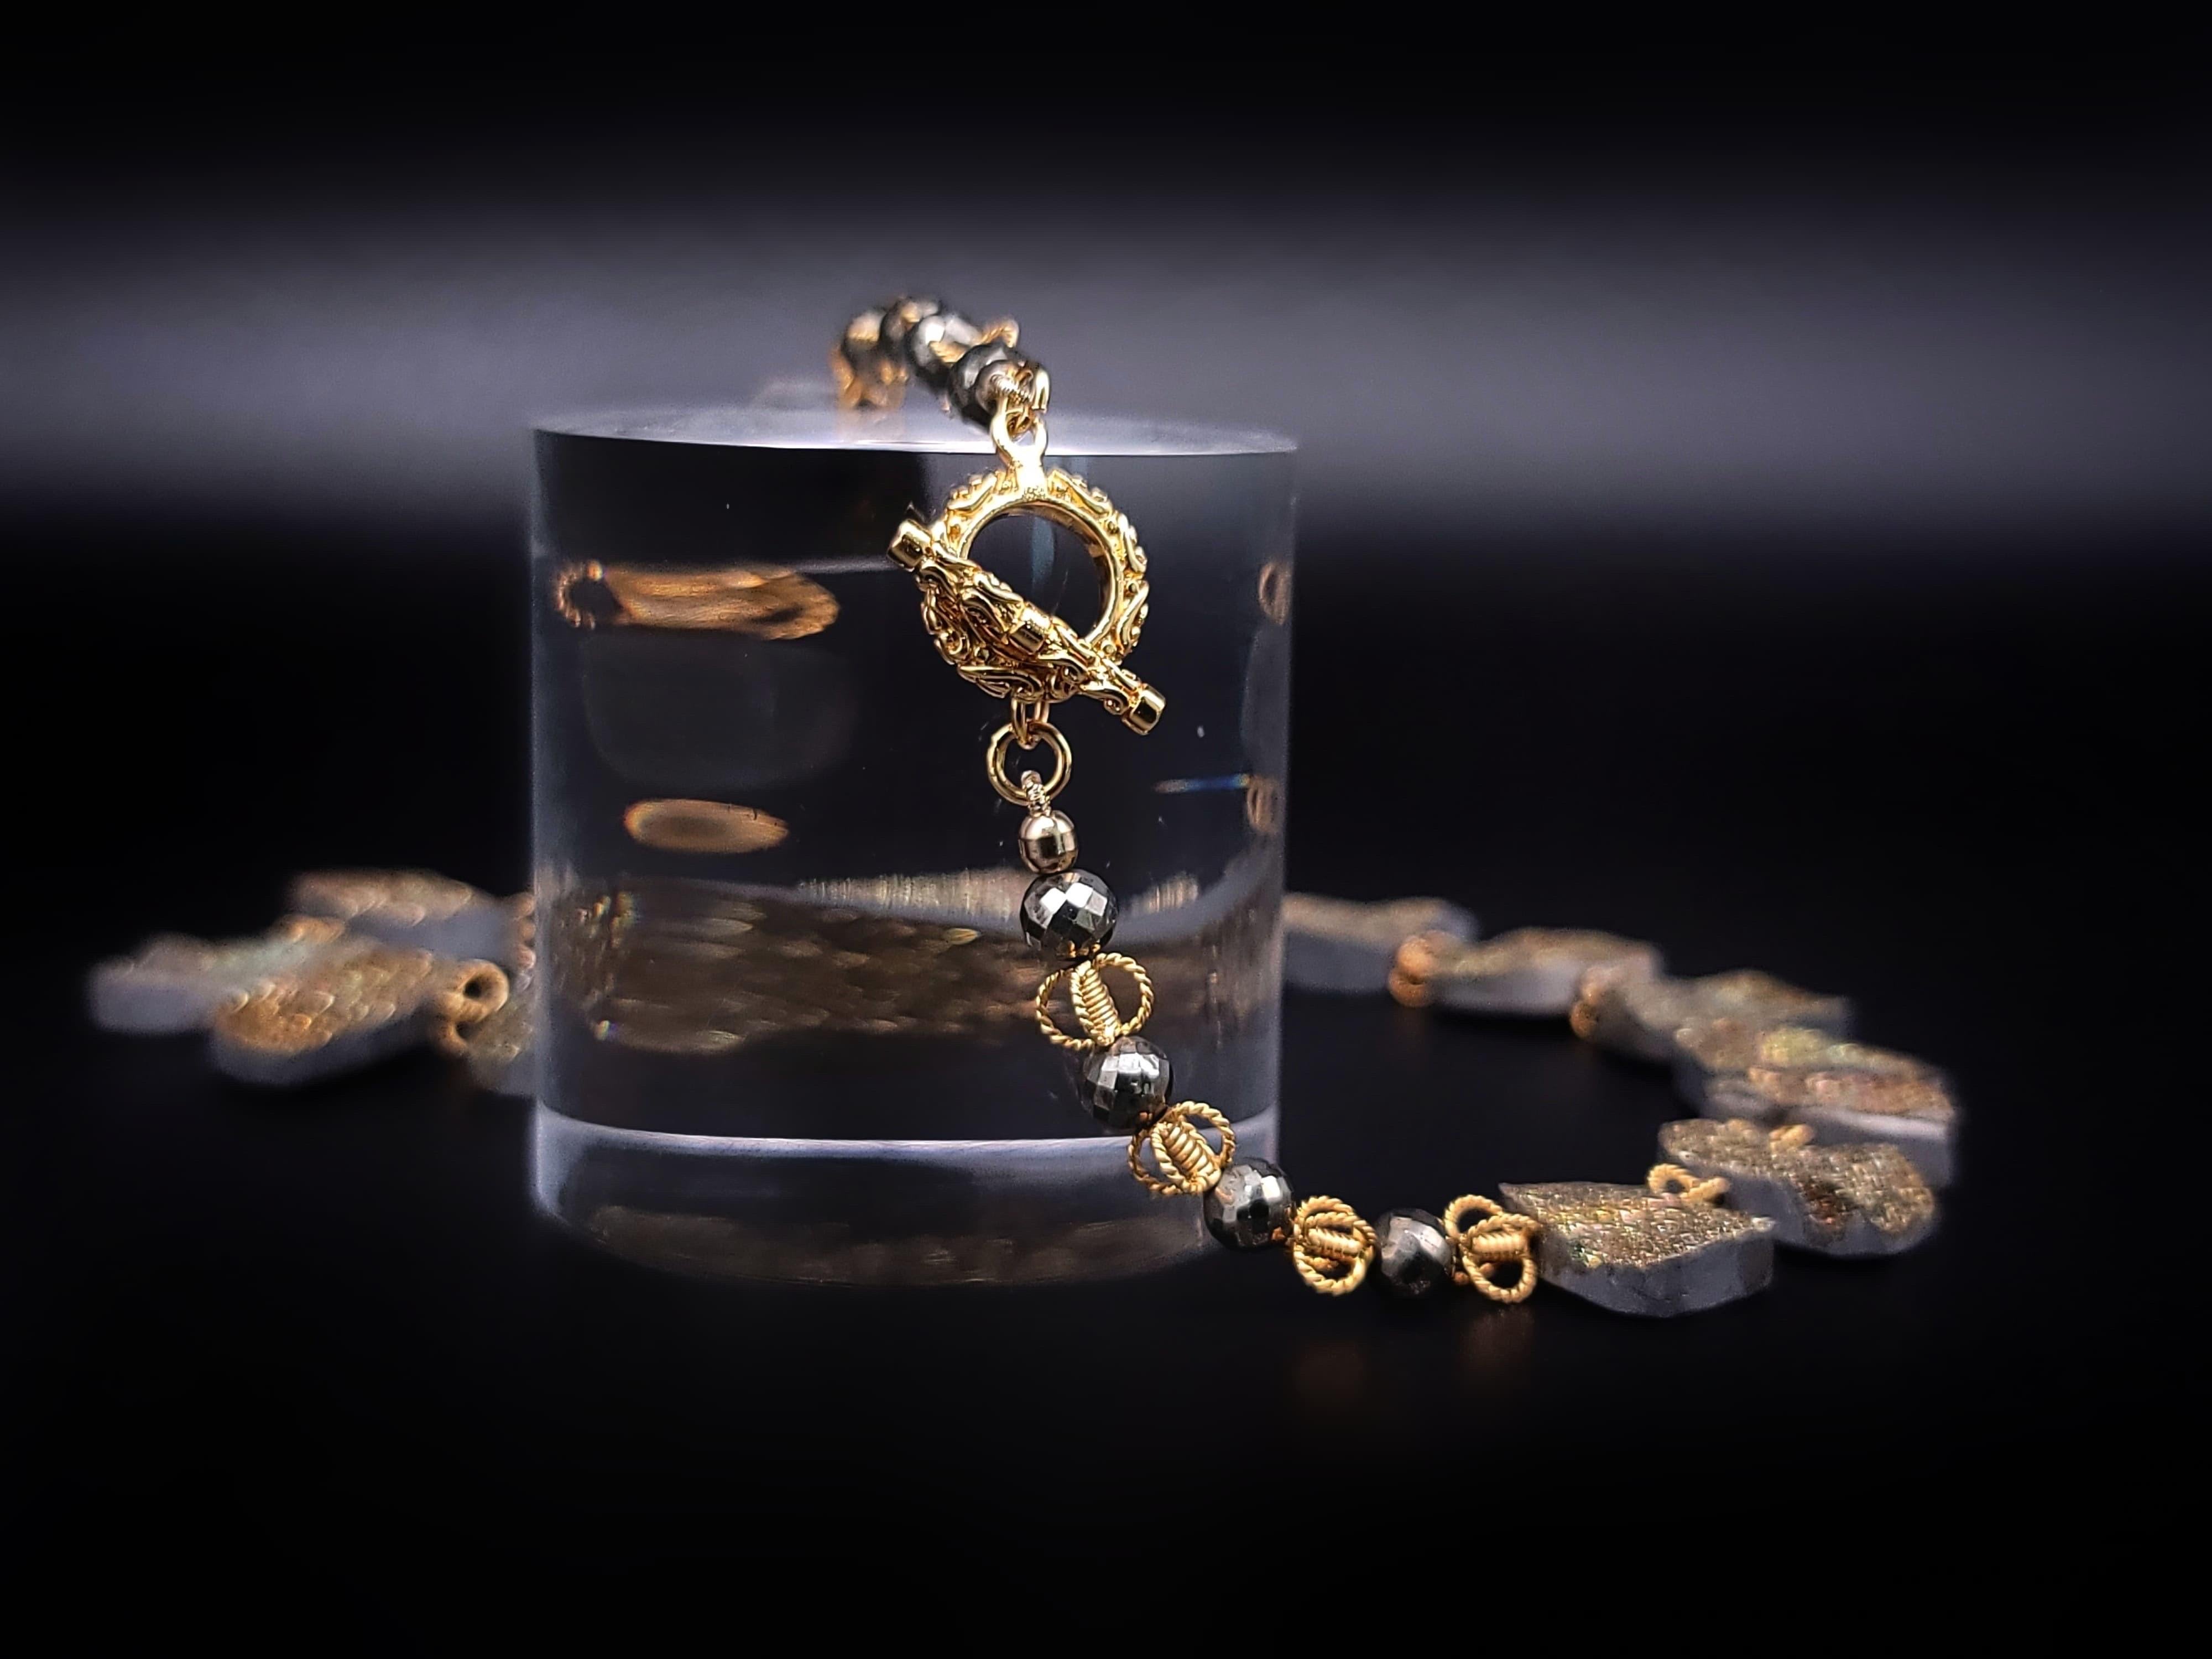 Wir präsentieren unsere exklusive Druzy-Pyrit-Platten-Halskette, ein Meisterwerk. Diese einzigartige Halskette zeigt die bezaubernde Schönheit von Regenbogen-Pyrit-Platten, die jede für sich einzigartig ist. Der Vermeil-Verschluss verleiht dem